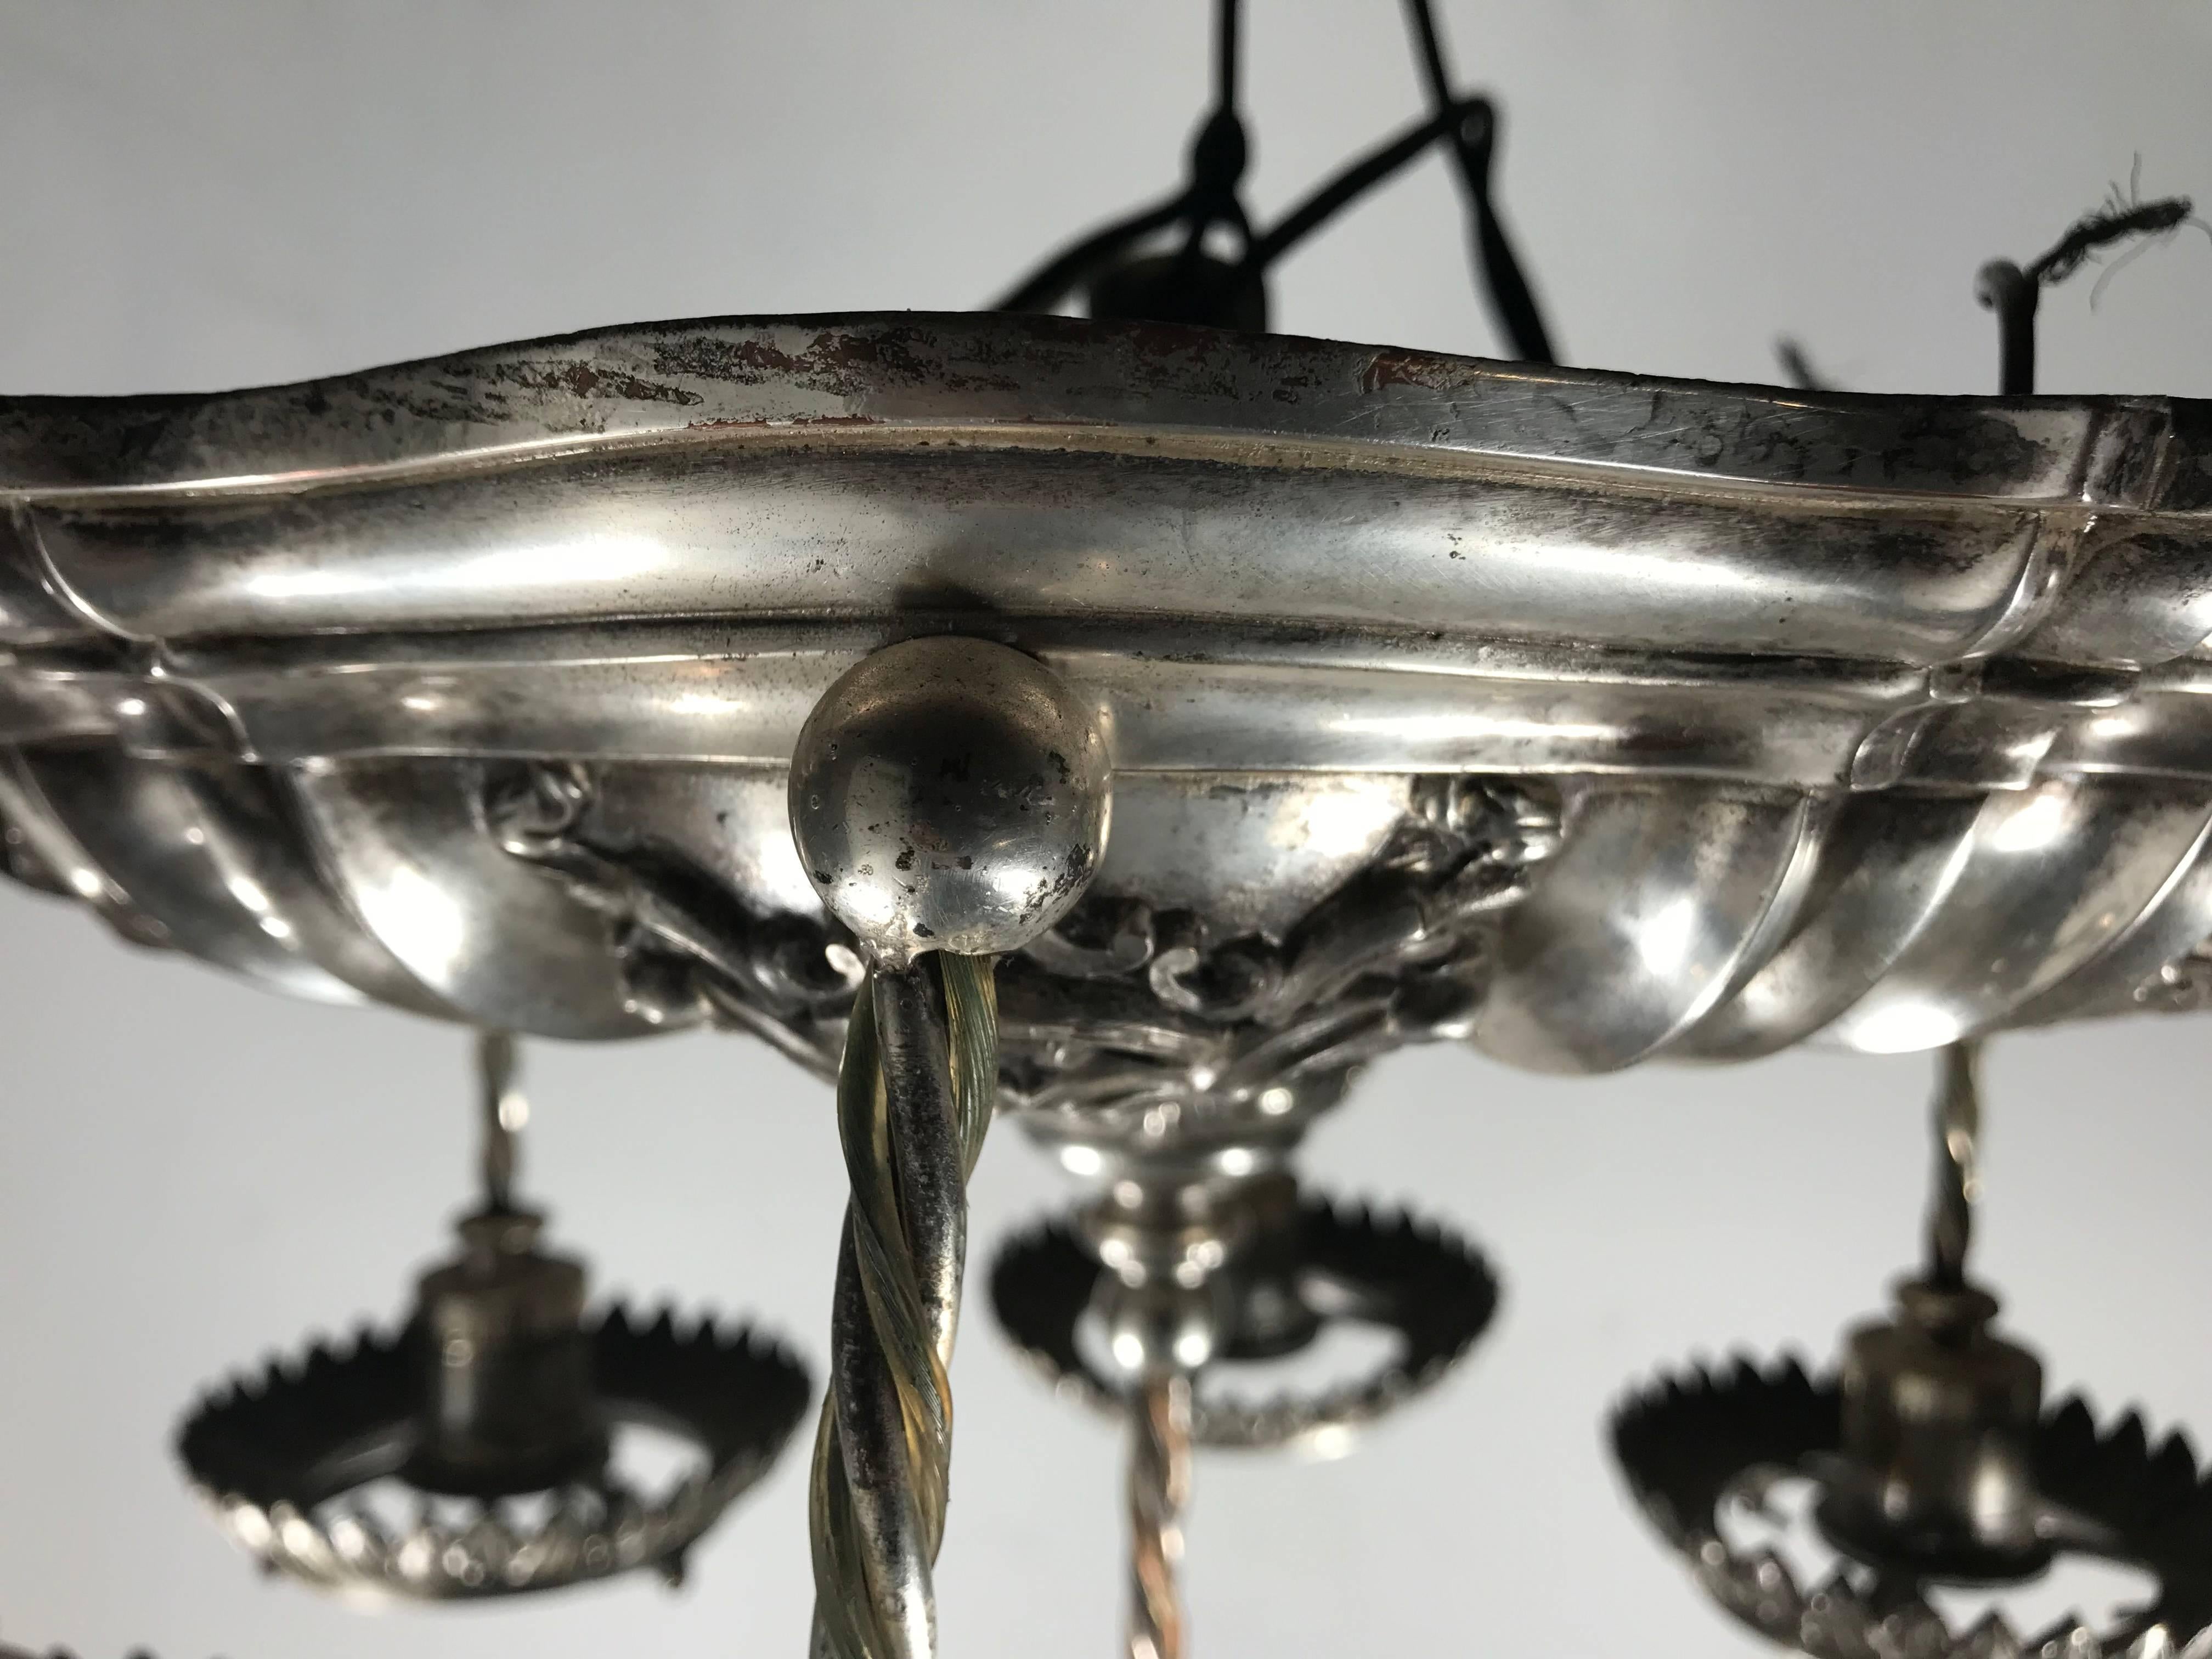 Superbe lustre suspendu de style néoclassique en métal argenté, signé E.F. Caldwell, vers les années 1920

Edward F. Caldwell & Co. de New York était l'un des principaux concepteurs et fabricants de luminaires électriques et d'objets métalliques